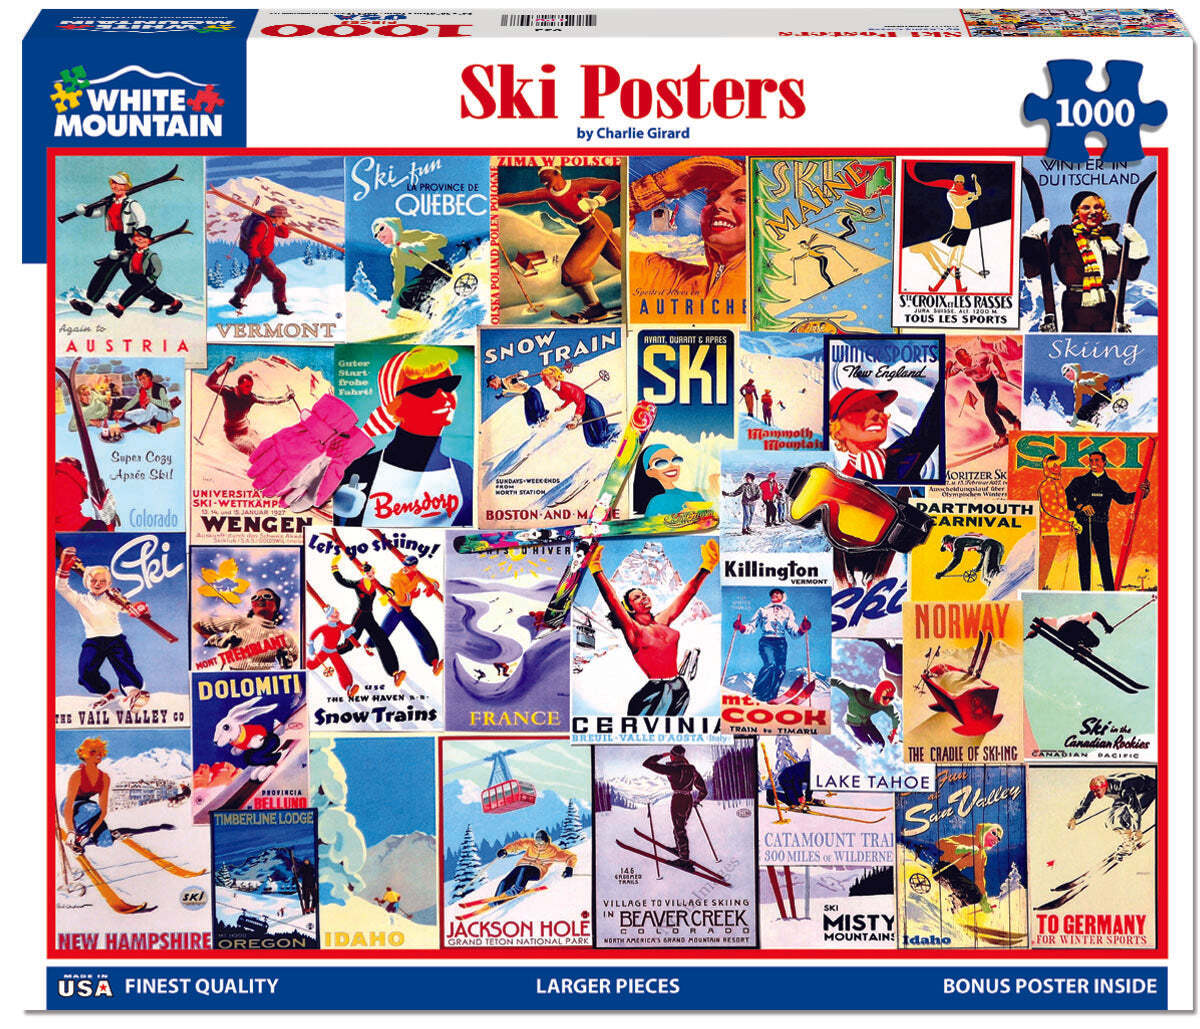 Ski Posters (932pz) - 1000 Piece Jigsaw Puzzle